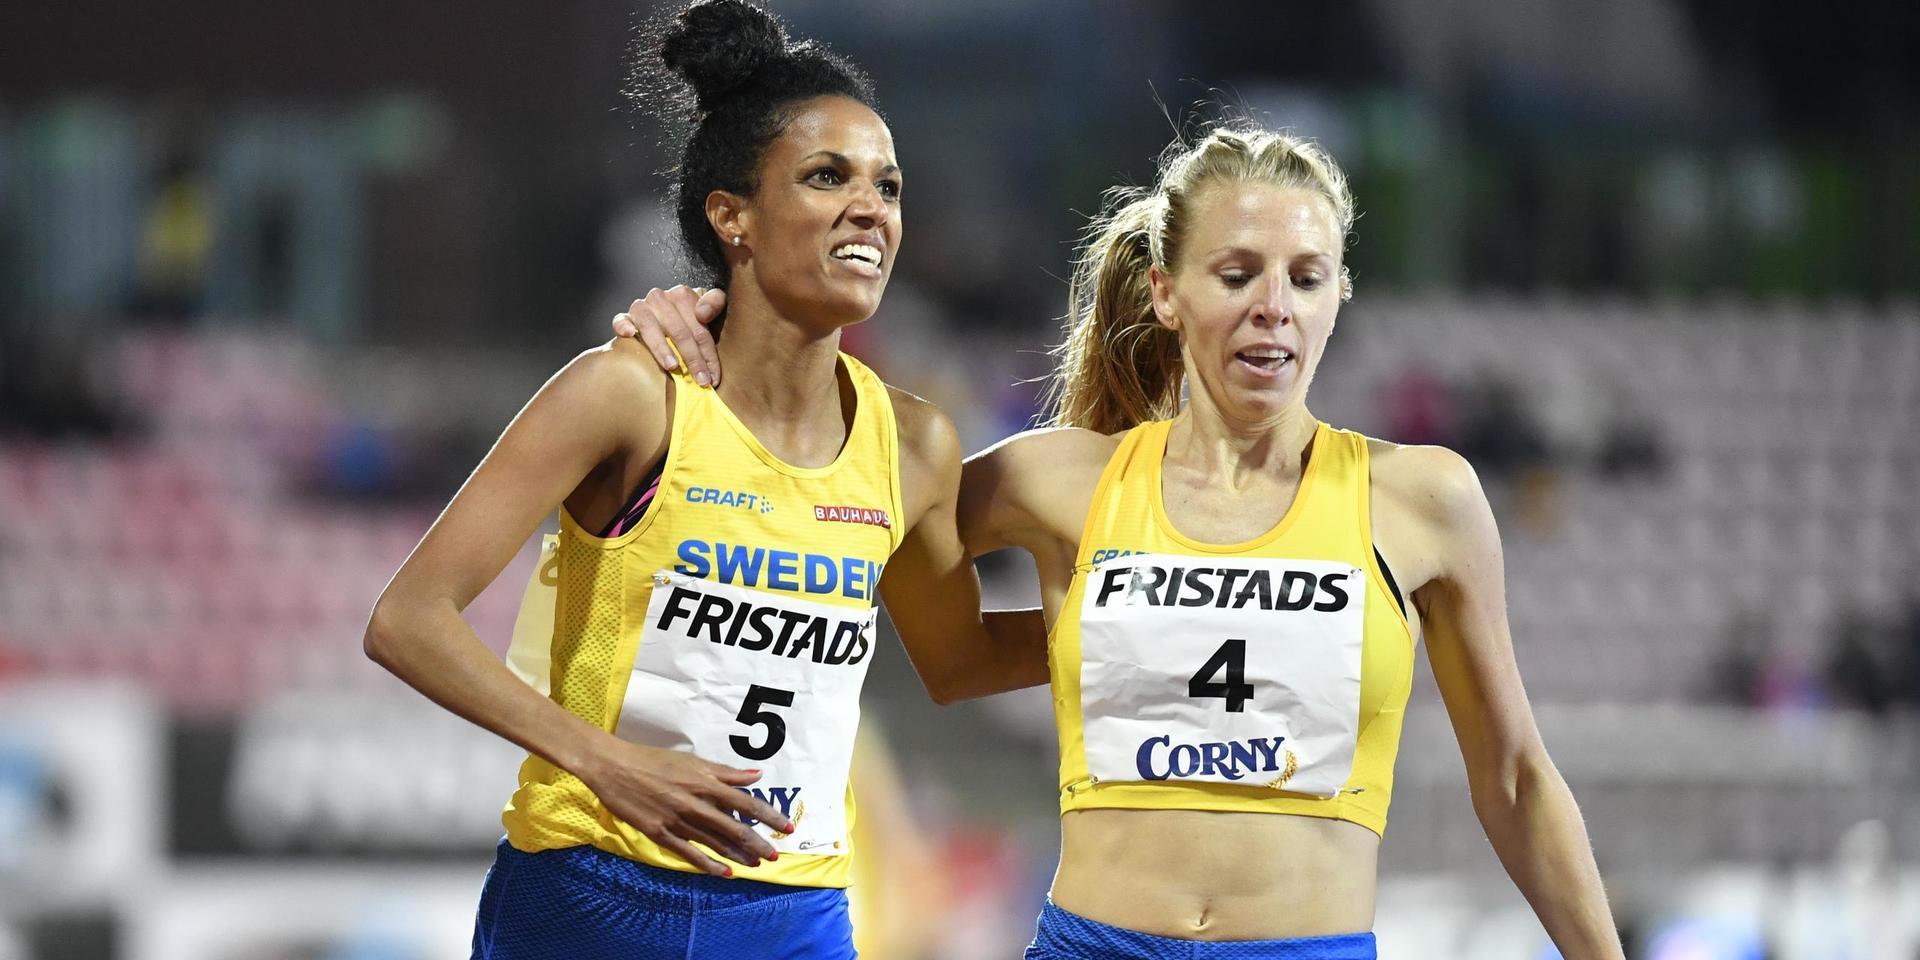 Hälles Meraf Bahta såg med Hanna Hermansson till att Sverige tog topplatserna på 1 500 meter under finnkampen i finska Tammerfors.